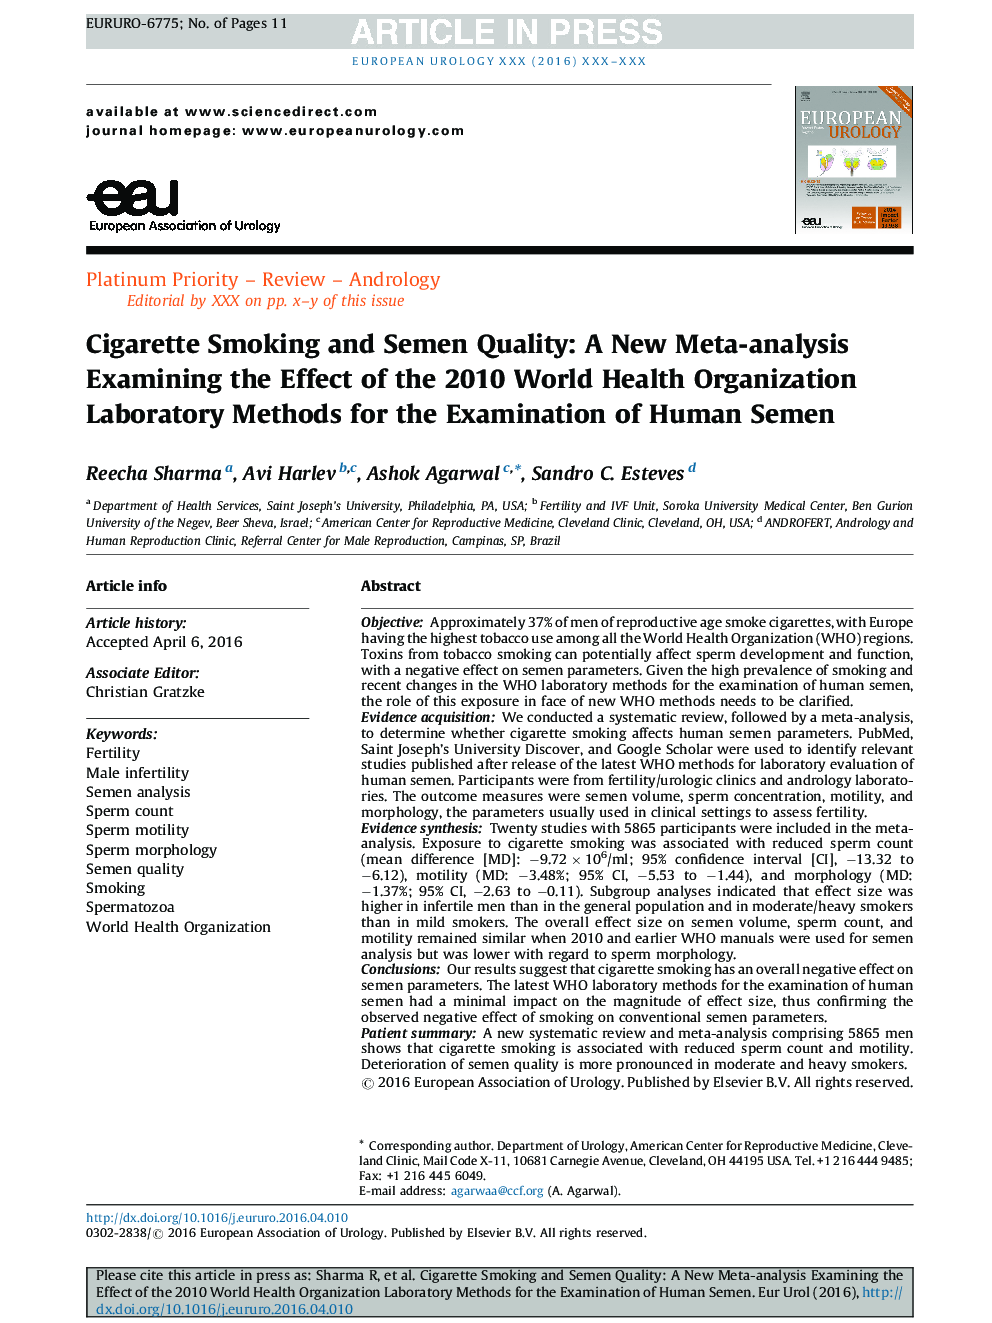 سیگار کشیدن سیگار و کیفیت مایع: یک متاآنالیز جدید بررسی تاثیر آزمایشات روشهای آزمایشگاهی سازمان بهداشت جهانی سال 2010 برای بررسی اسپرم انسان 